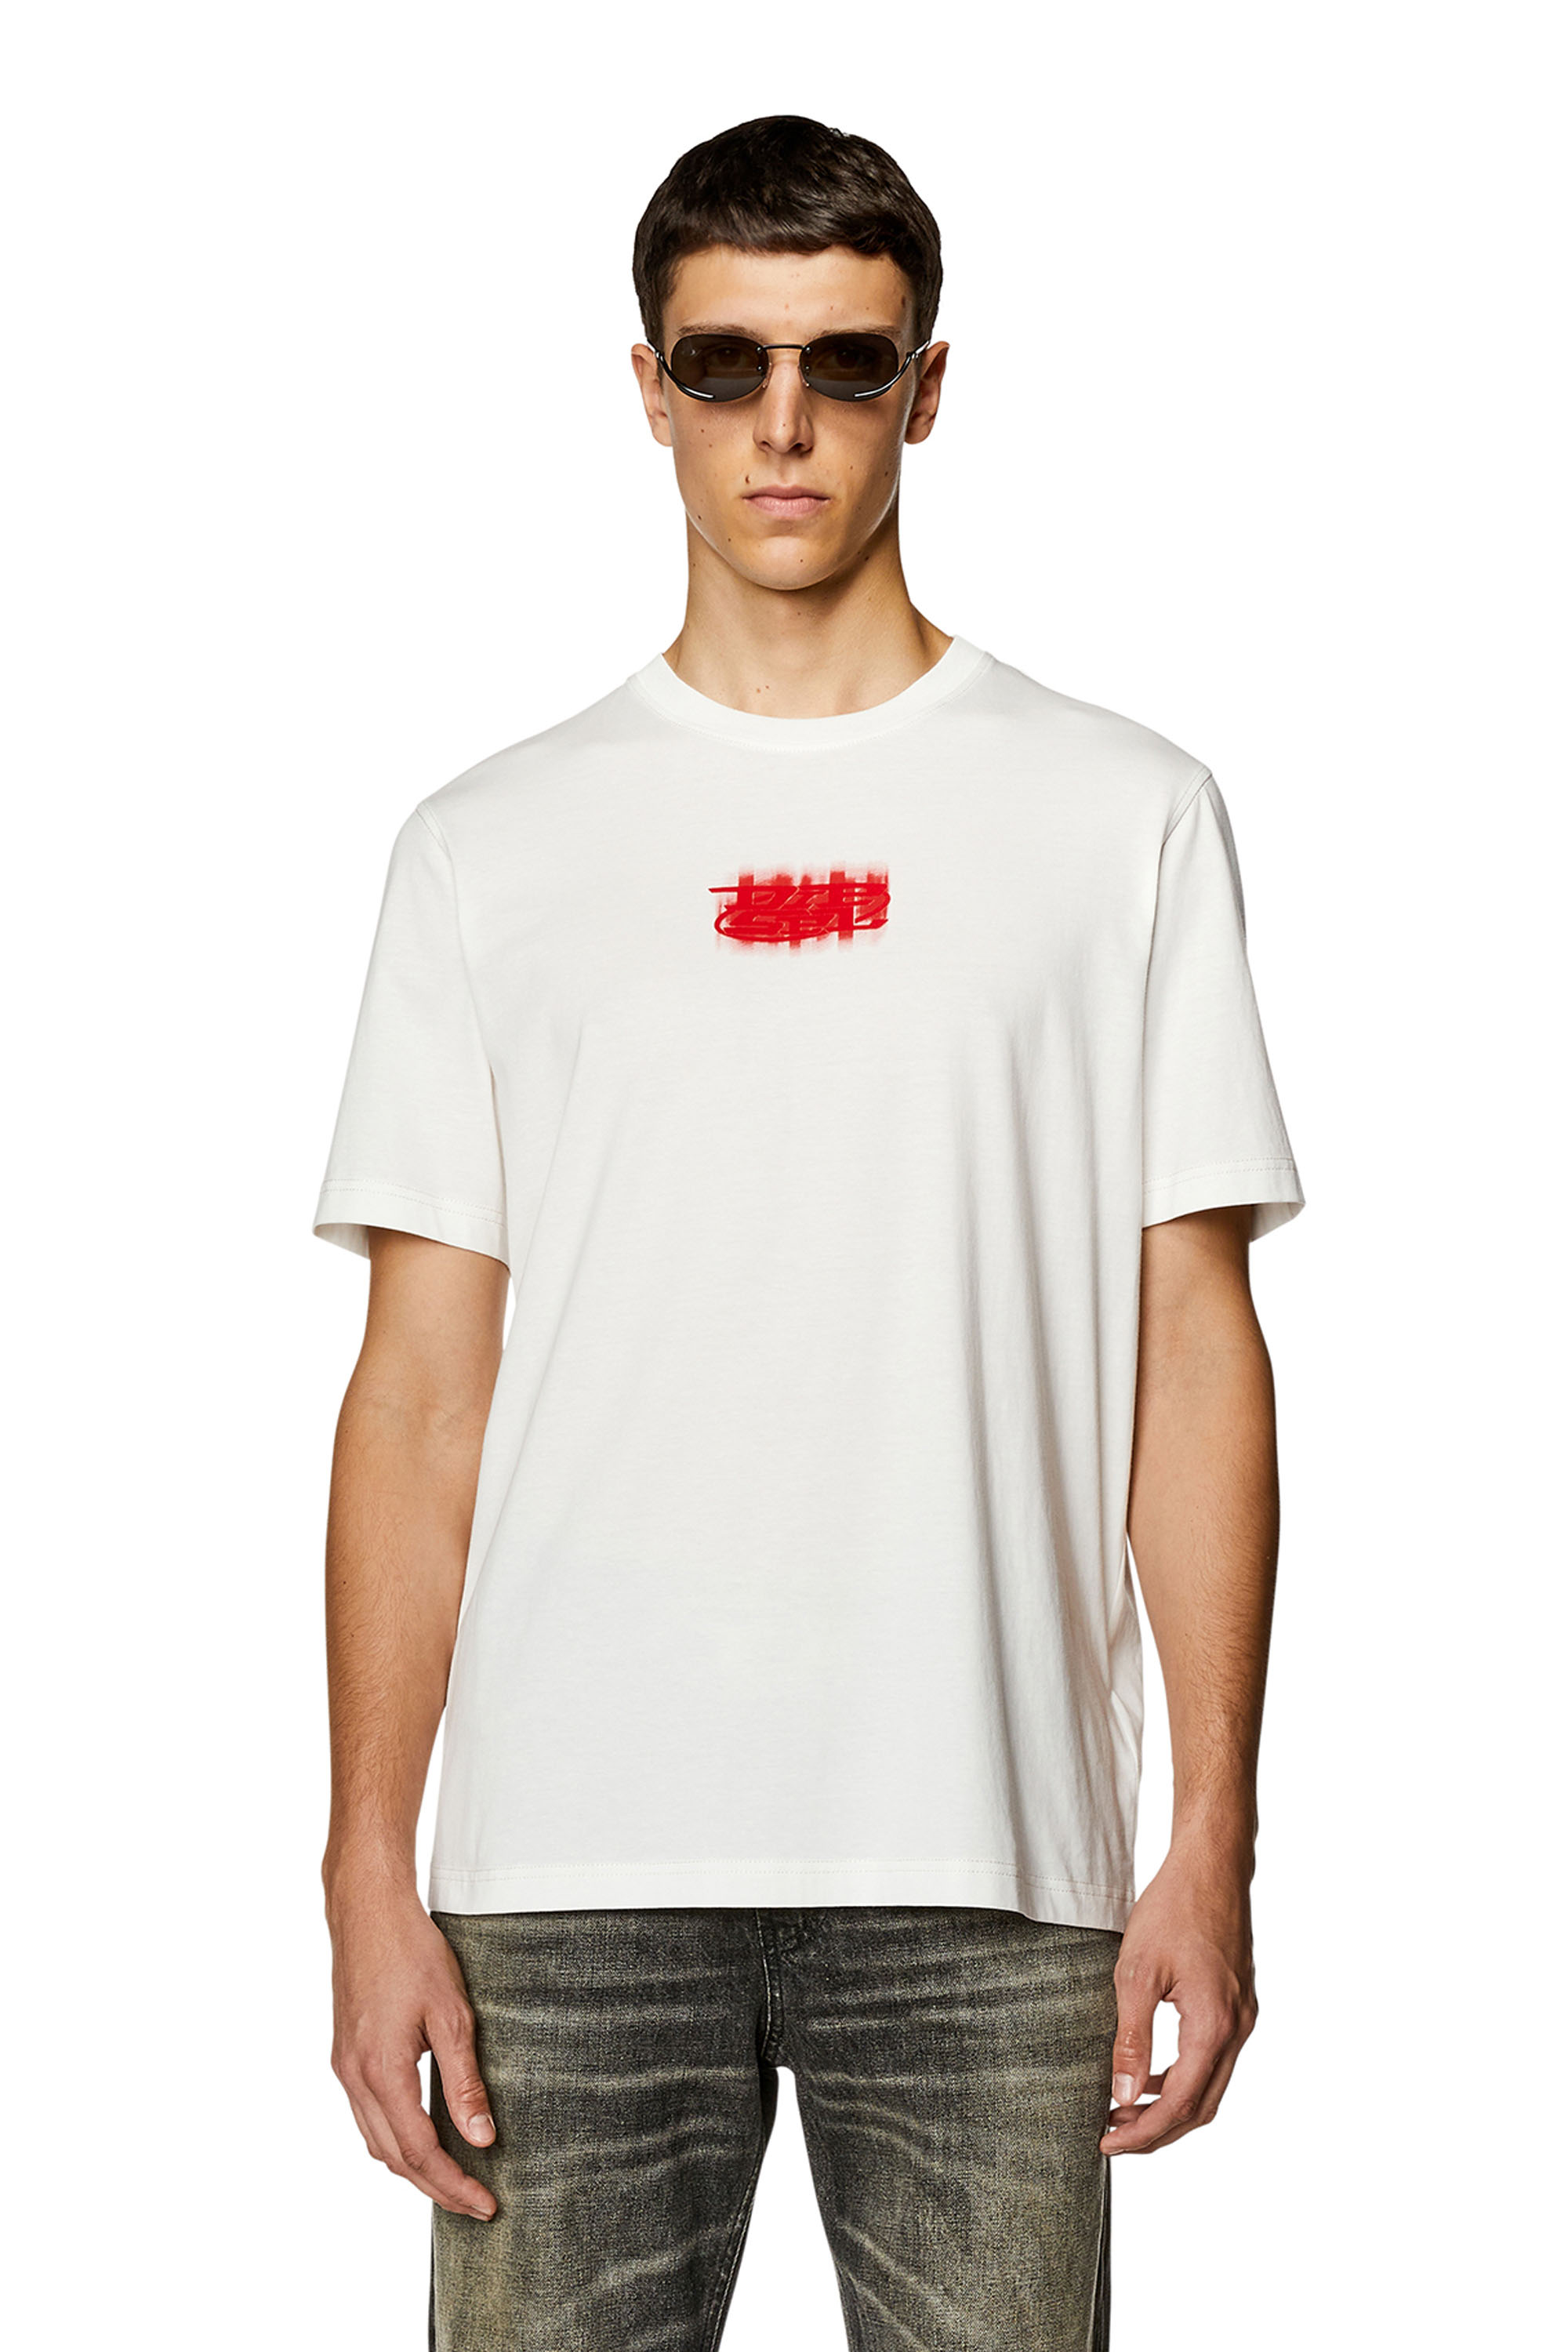 Diesel - T-JUST-N4, Hombre Camiseta de algodón orgánico con logotipo en relieve in Blanco - Image 1